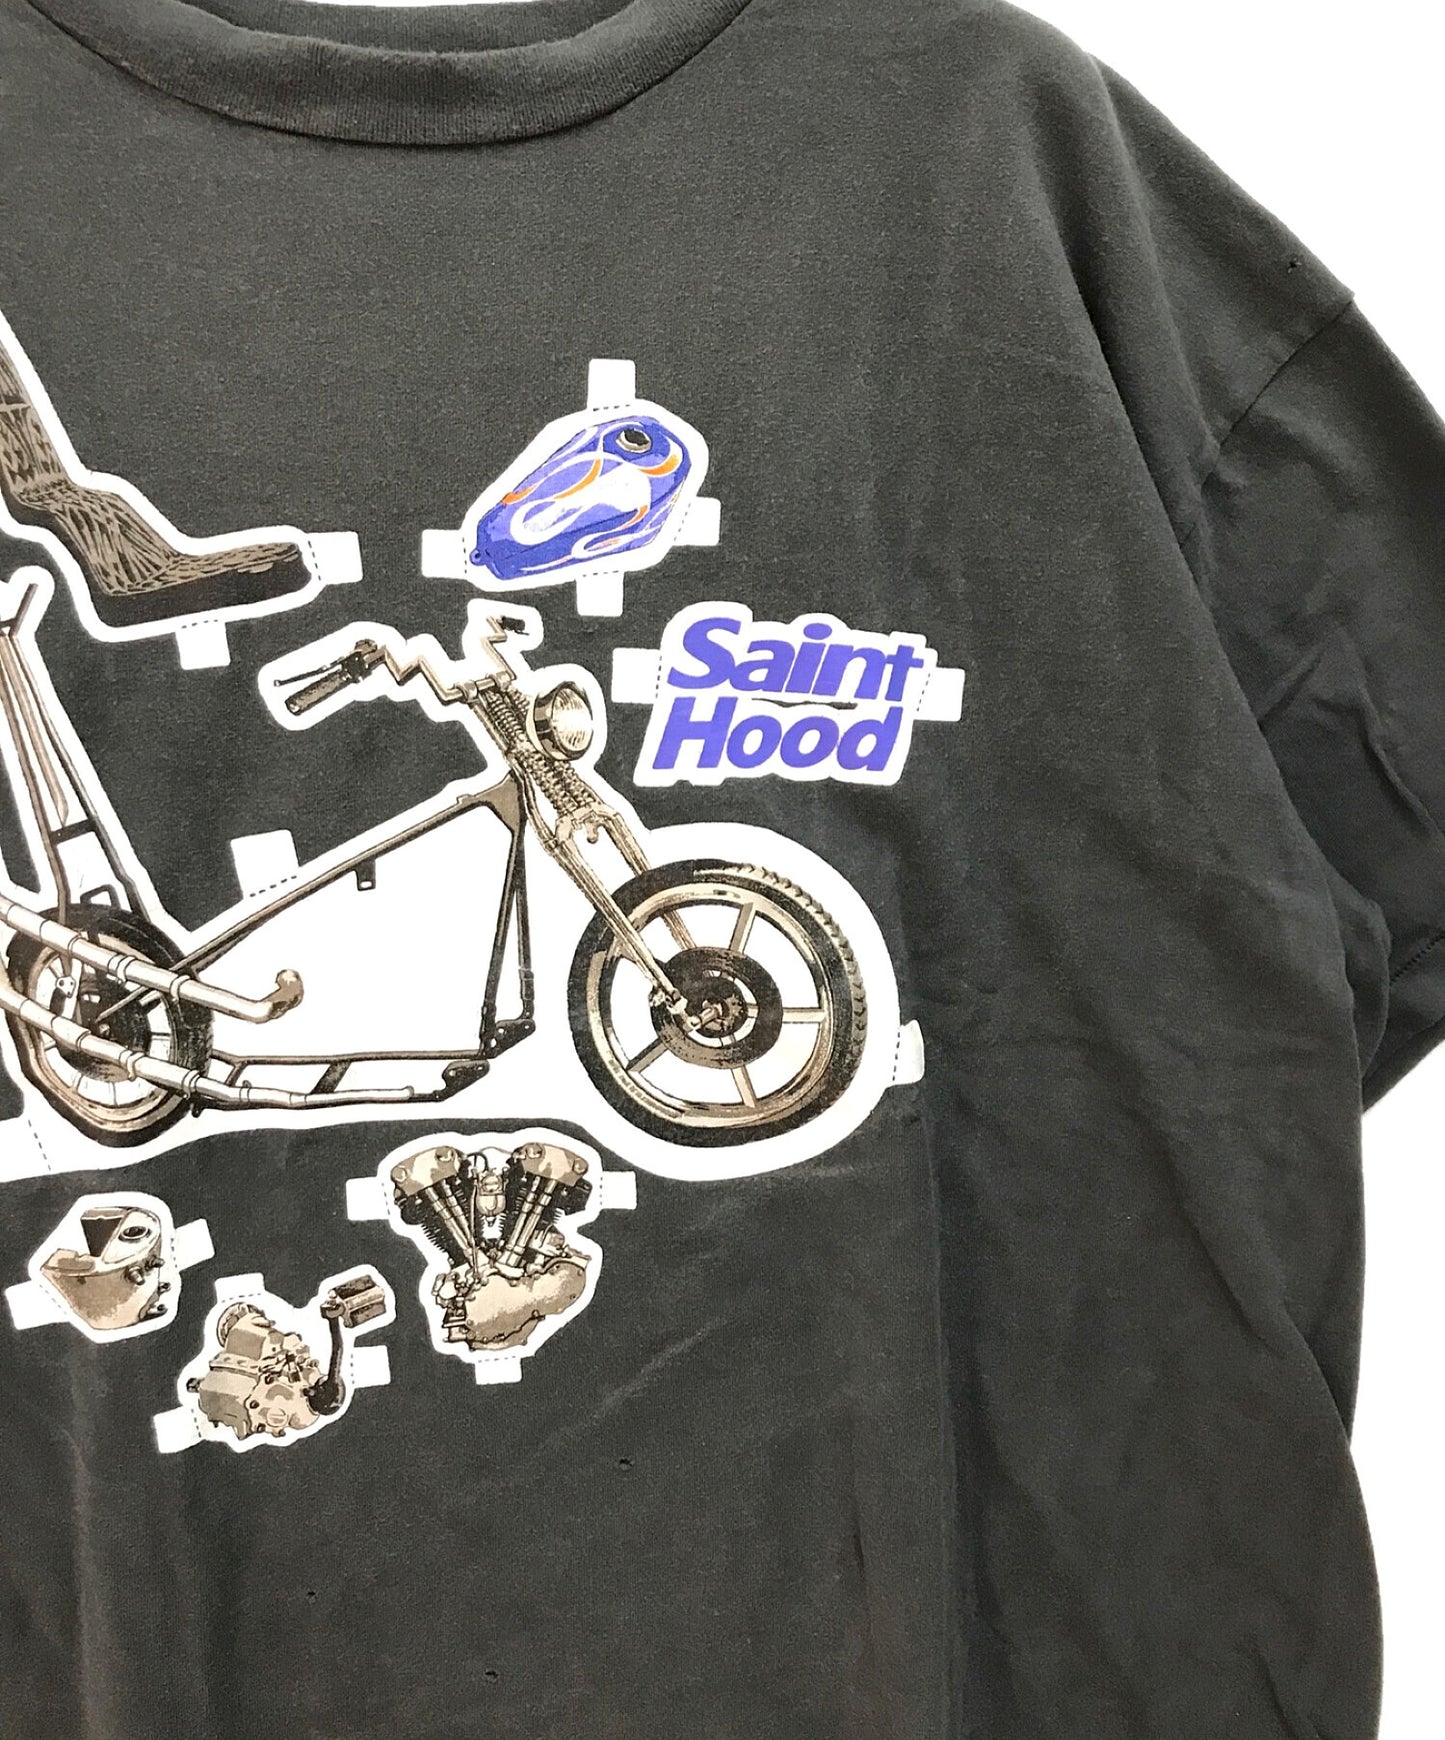 세인트 마이클 STHD SS 티/자전거 오토바이 인쇄 손상된 티셔츠 짧은 슬리브 컷 및 바느질 SM-S23-0000-114/23119SMN-CSM01S